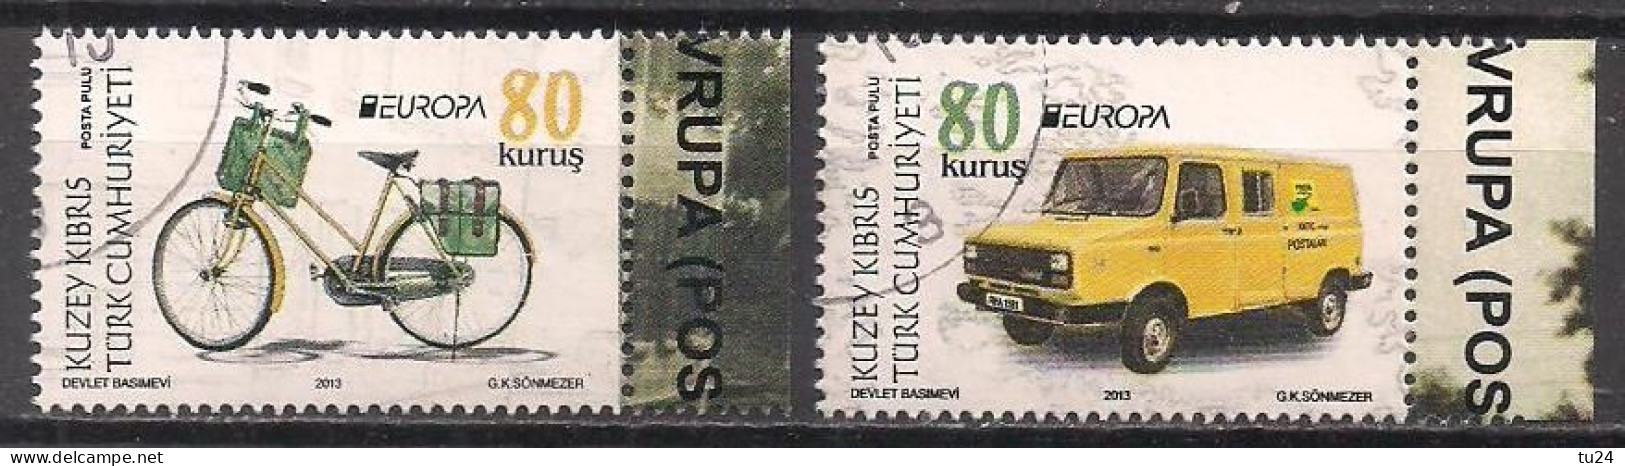 Zypern Türk.  (2013)  Mi.Nr.  774 I + 775 I  Gest. / Used  (10hf06)  EUROPA - Used Stamps